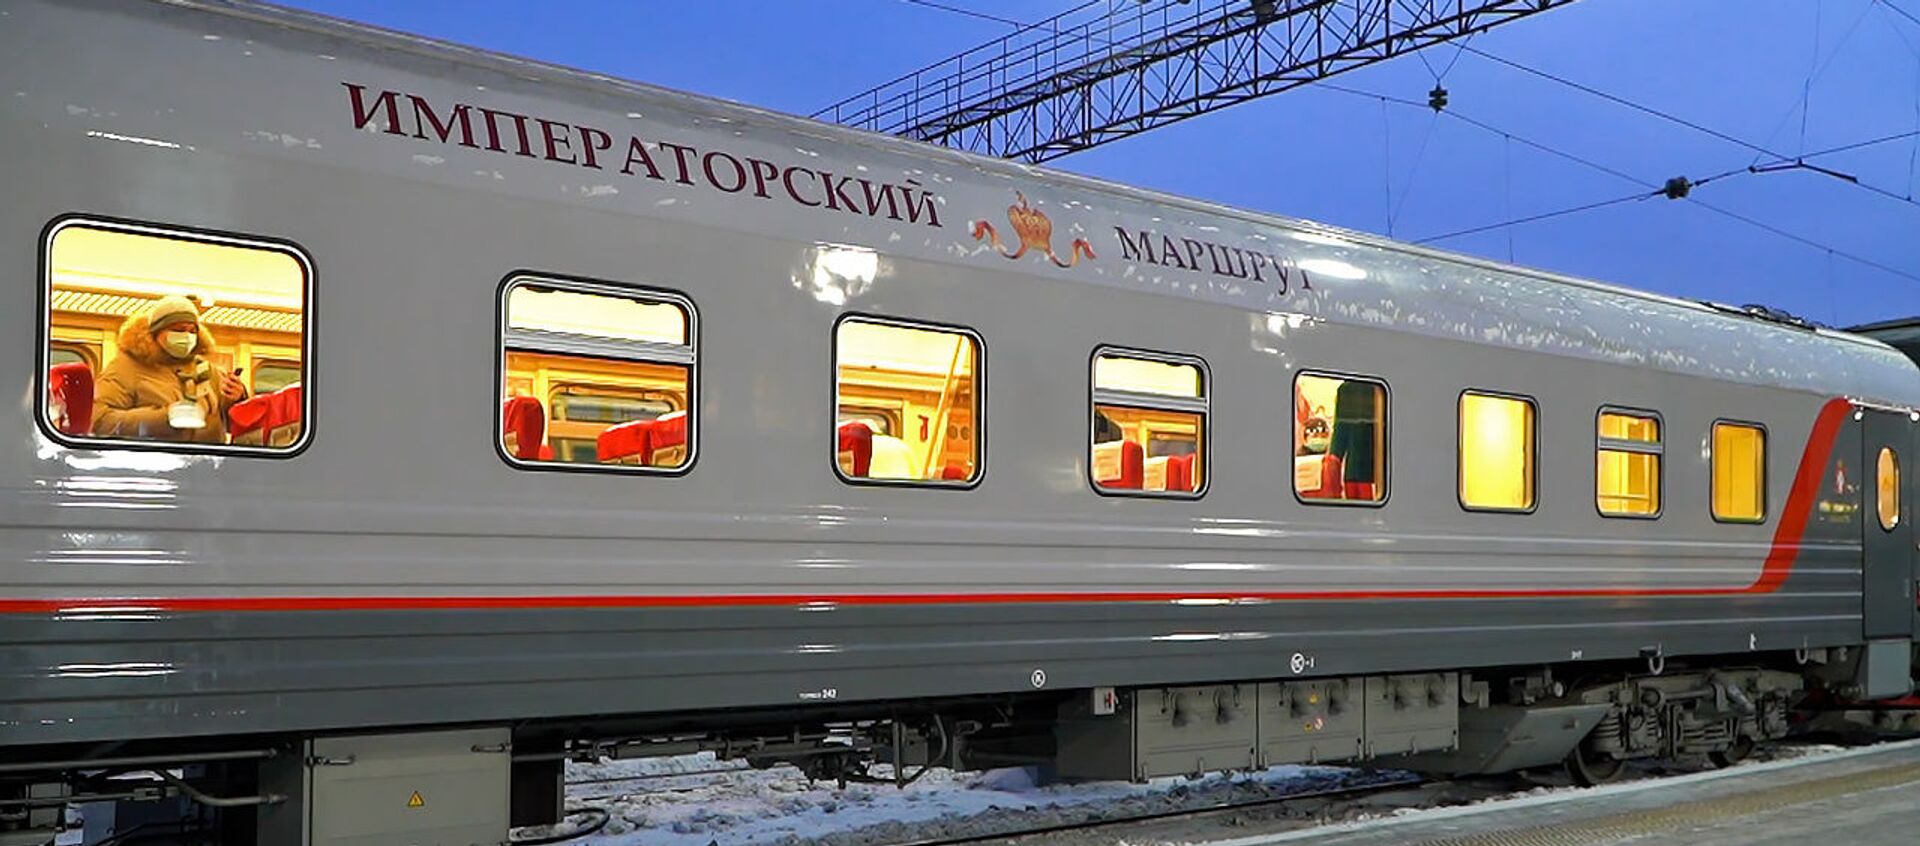 Императорский маршрут: как выглядит самый необычный поезд России - видео - Sputnik Беларусь, 1920, 22.02.2021